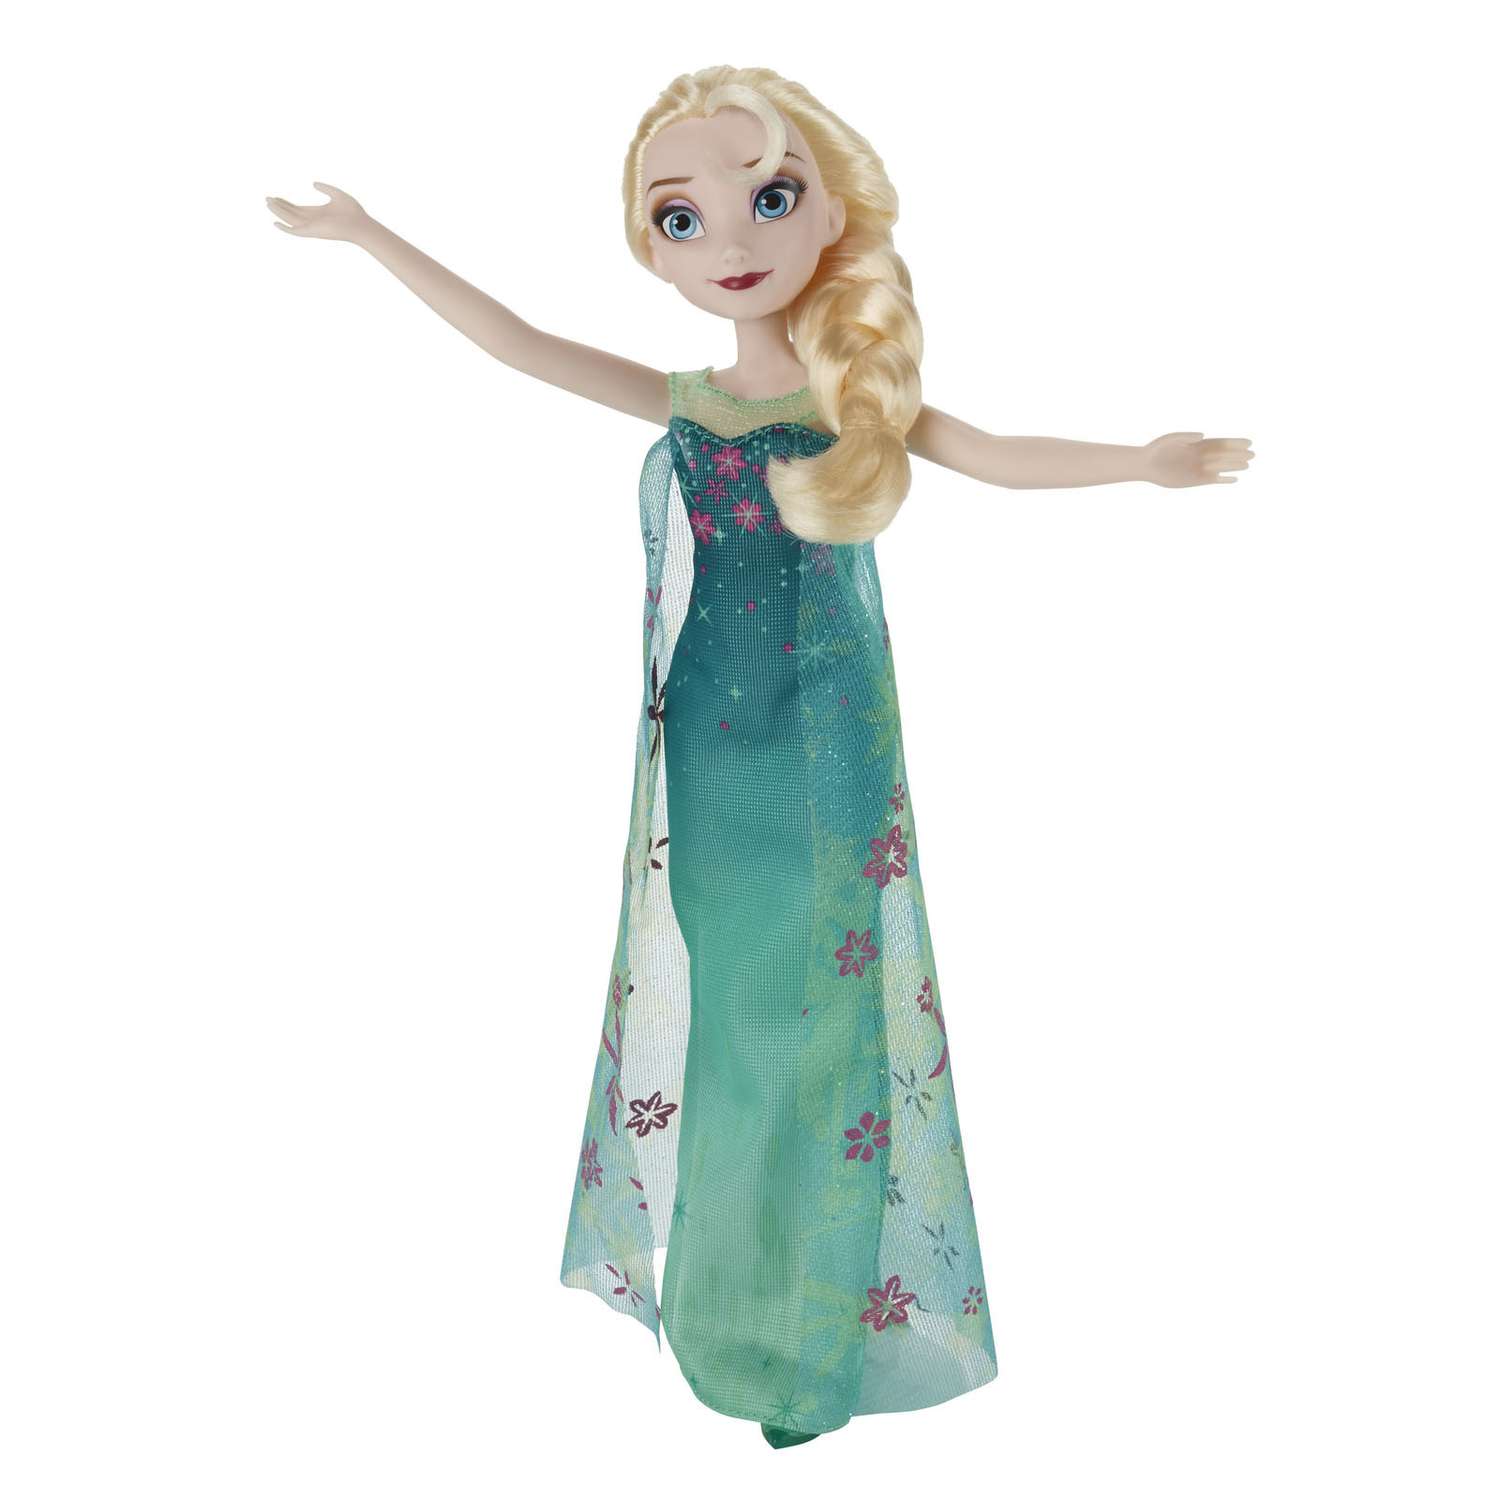 Модная кукла Disney Frozen Холодное Сердце Эльза B5164EU4 - фото 2